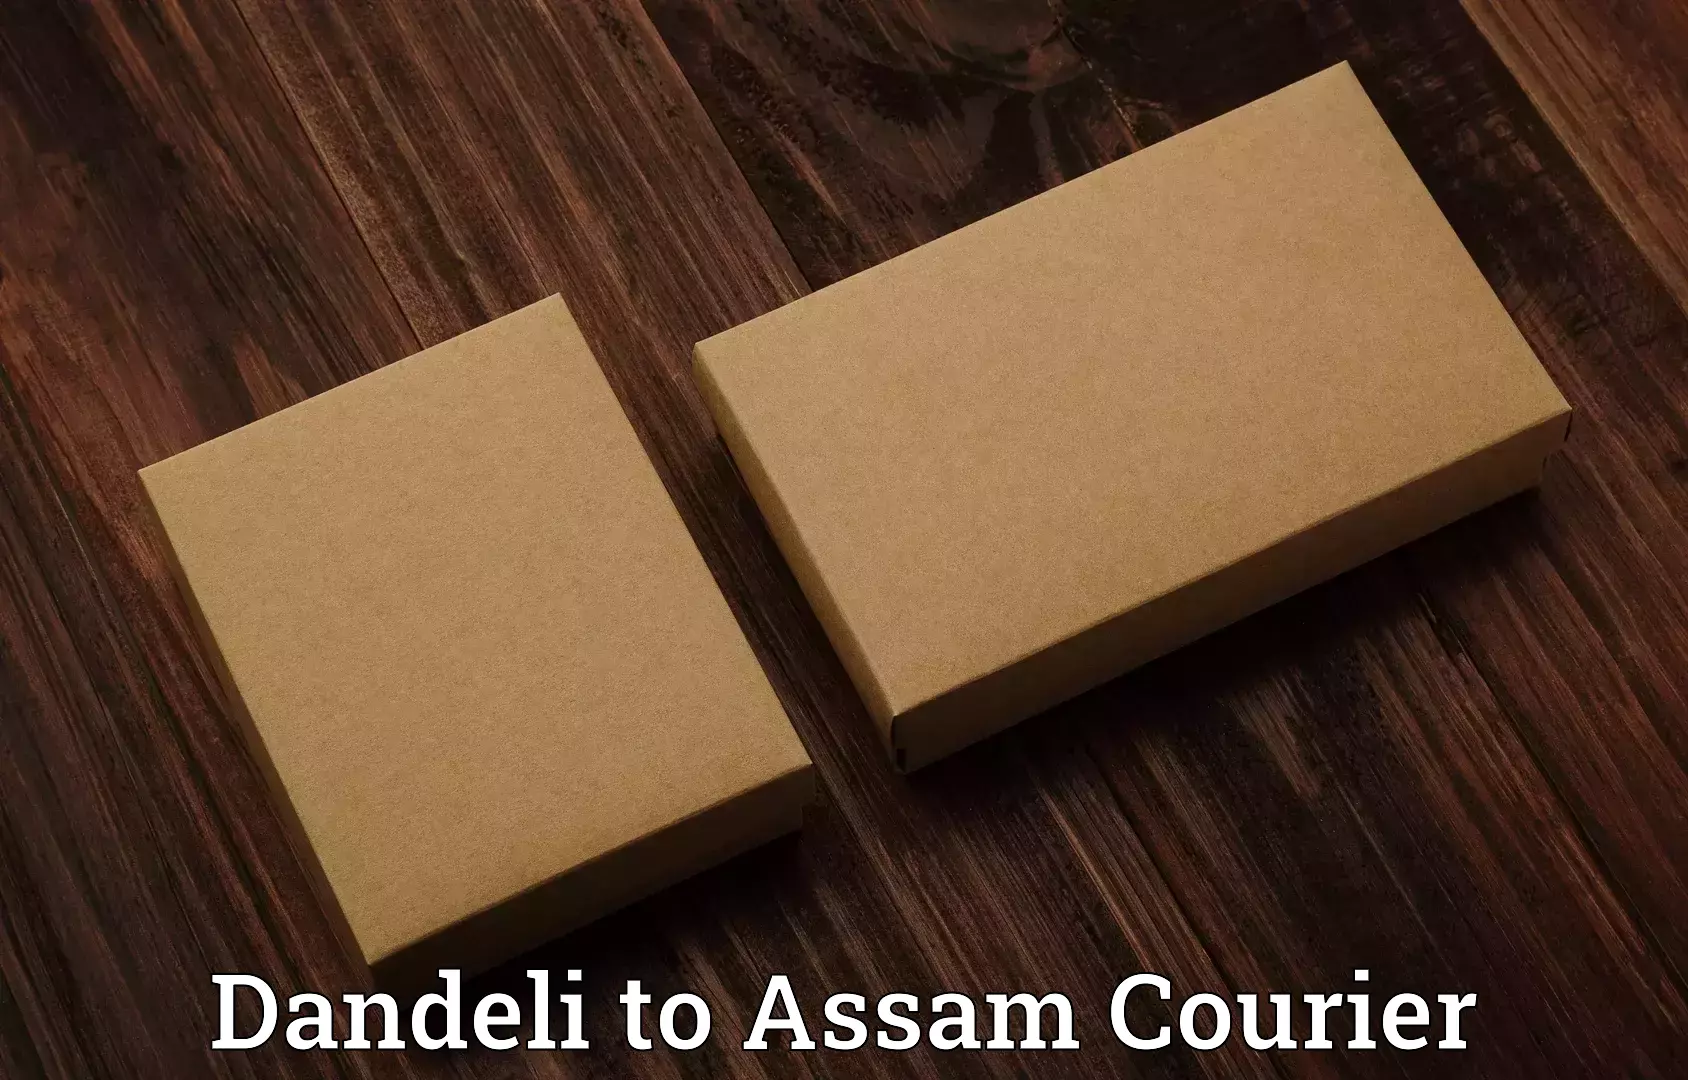 Baggage transport technology Dandeli to Assam